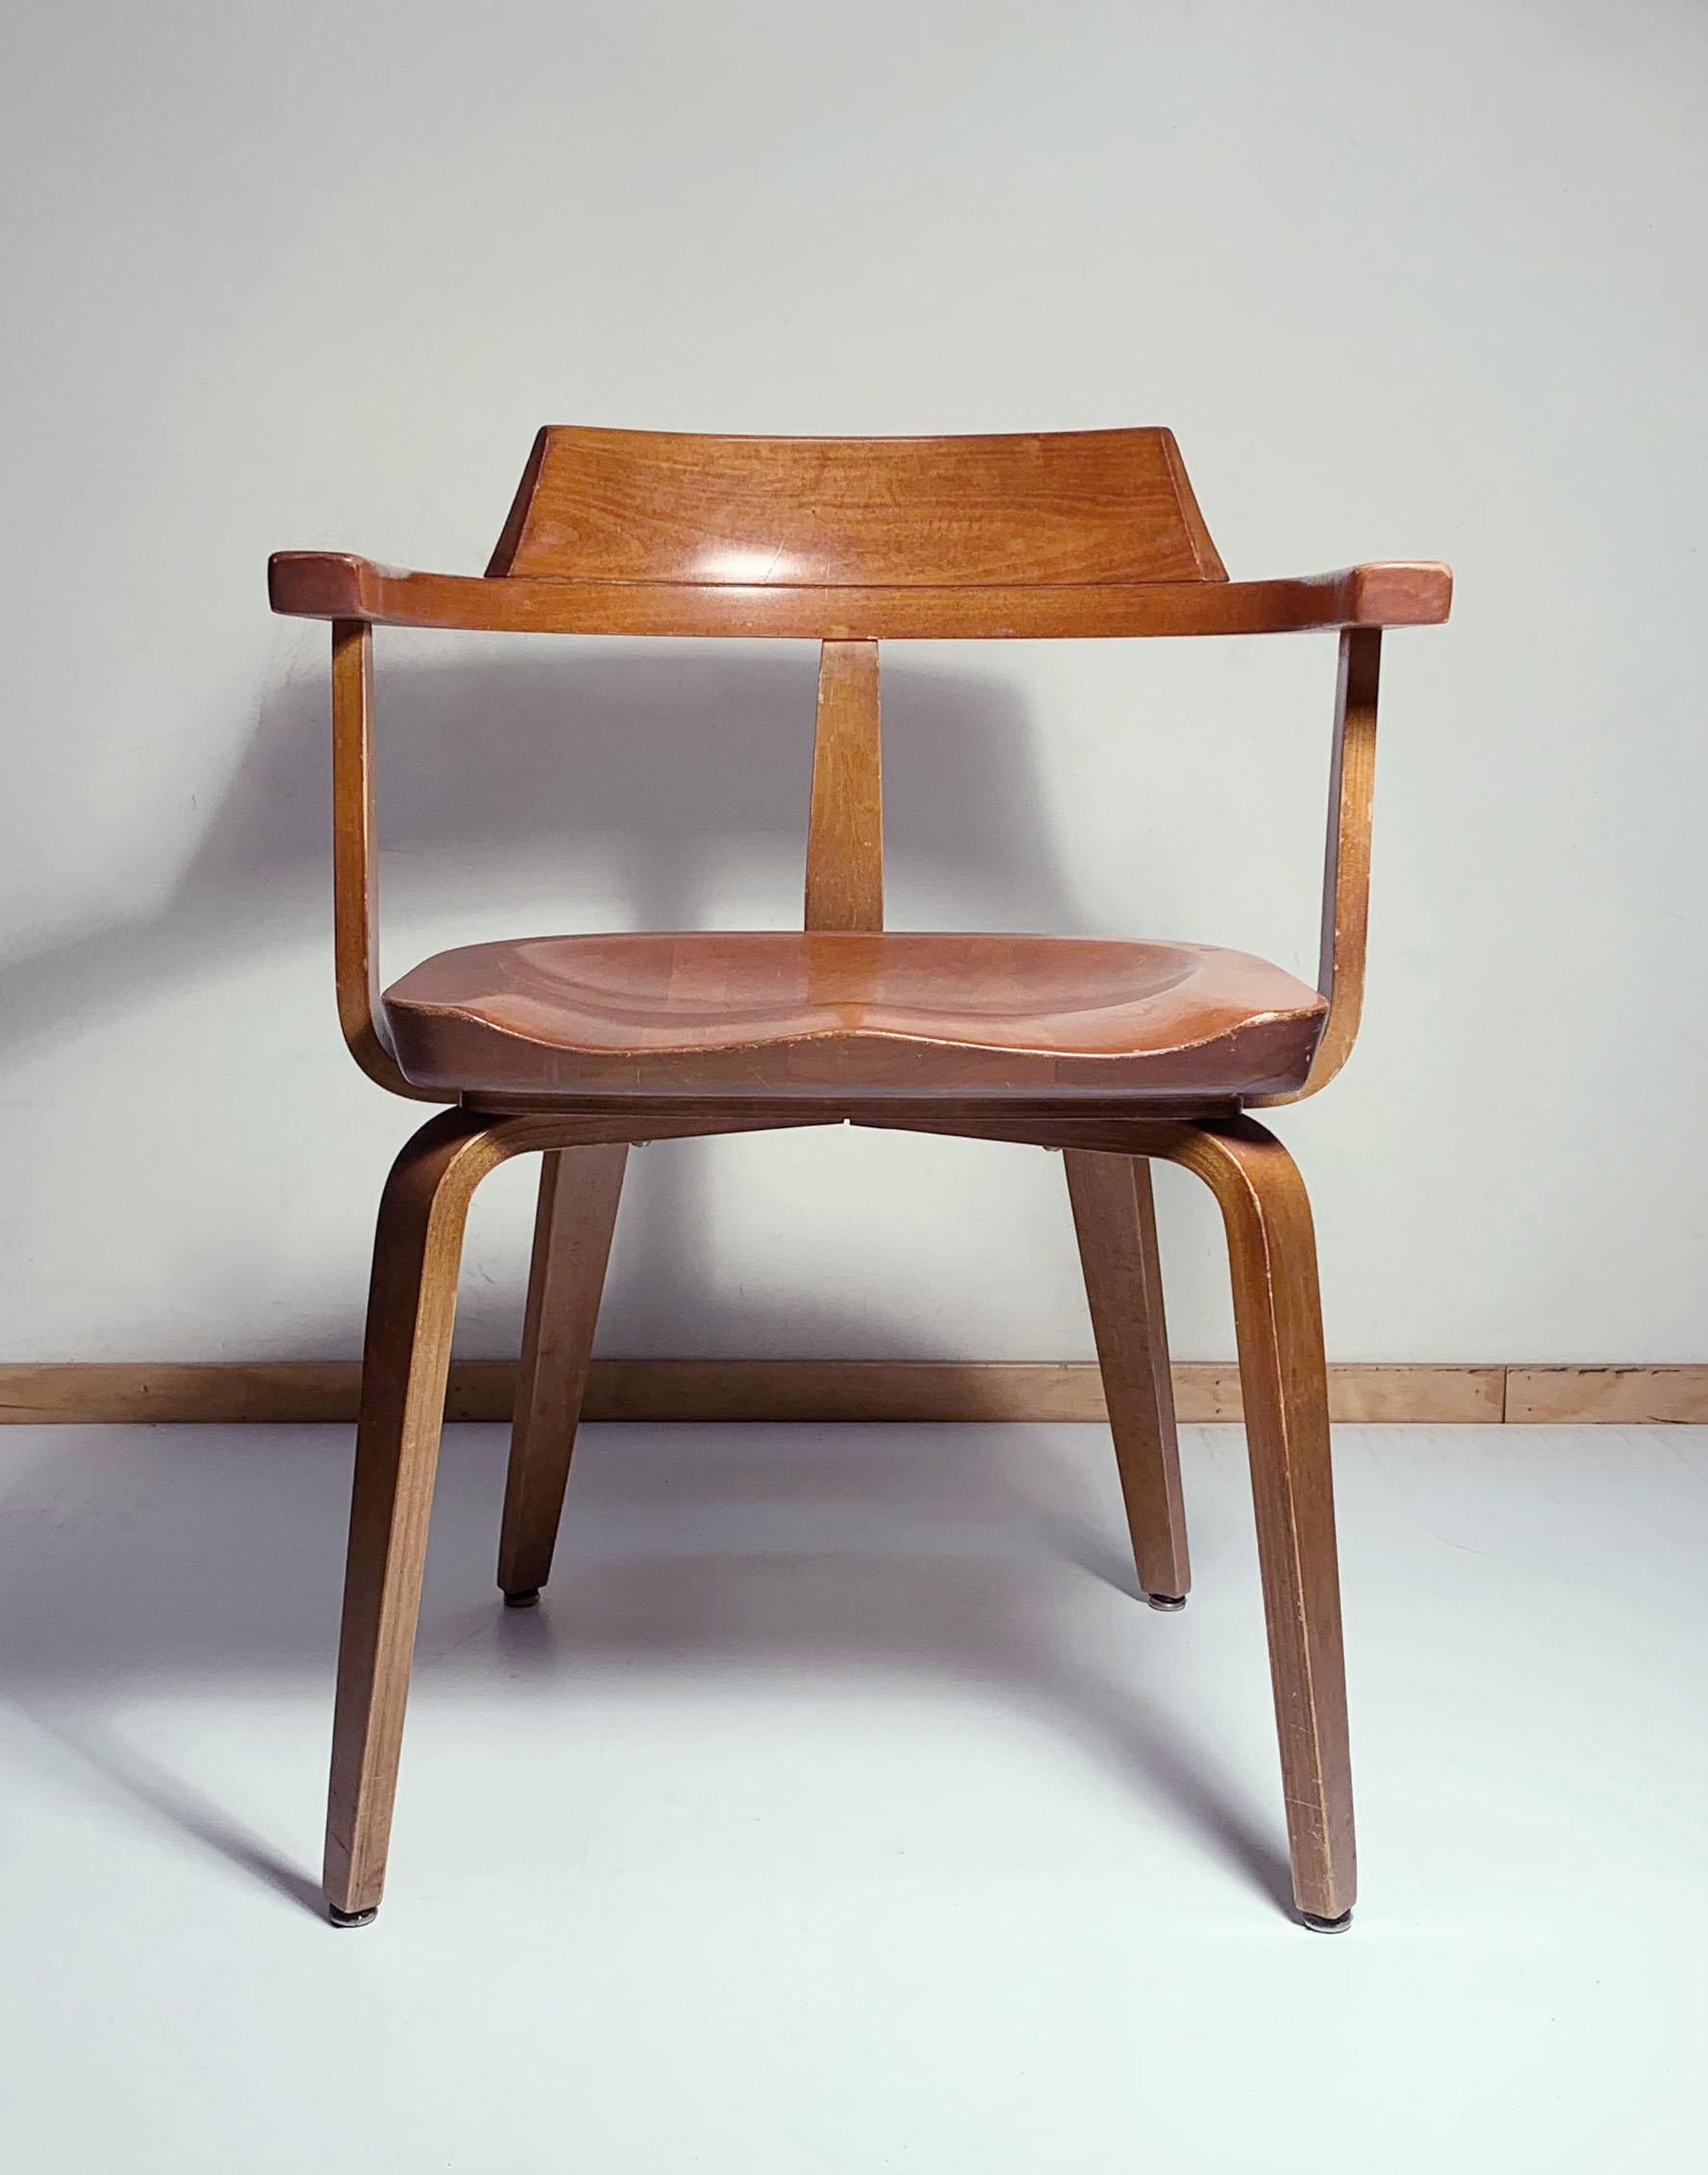 20th Century Thonet Chair by Walter Gropius